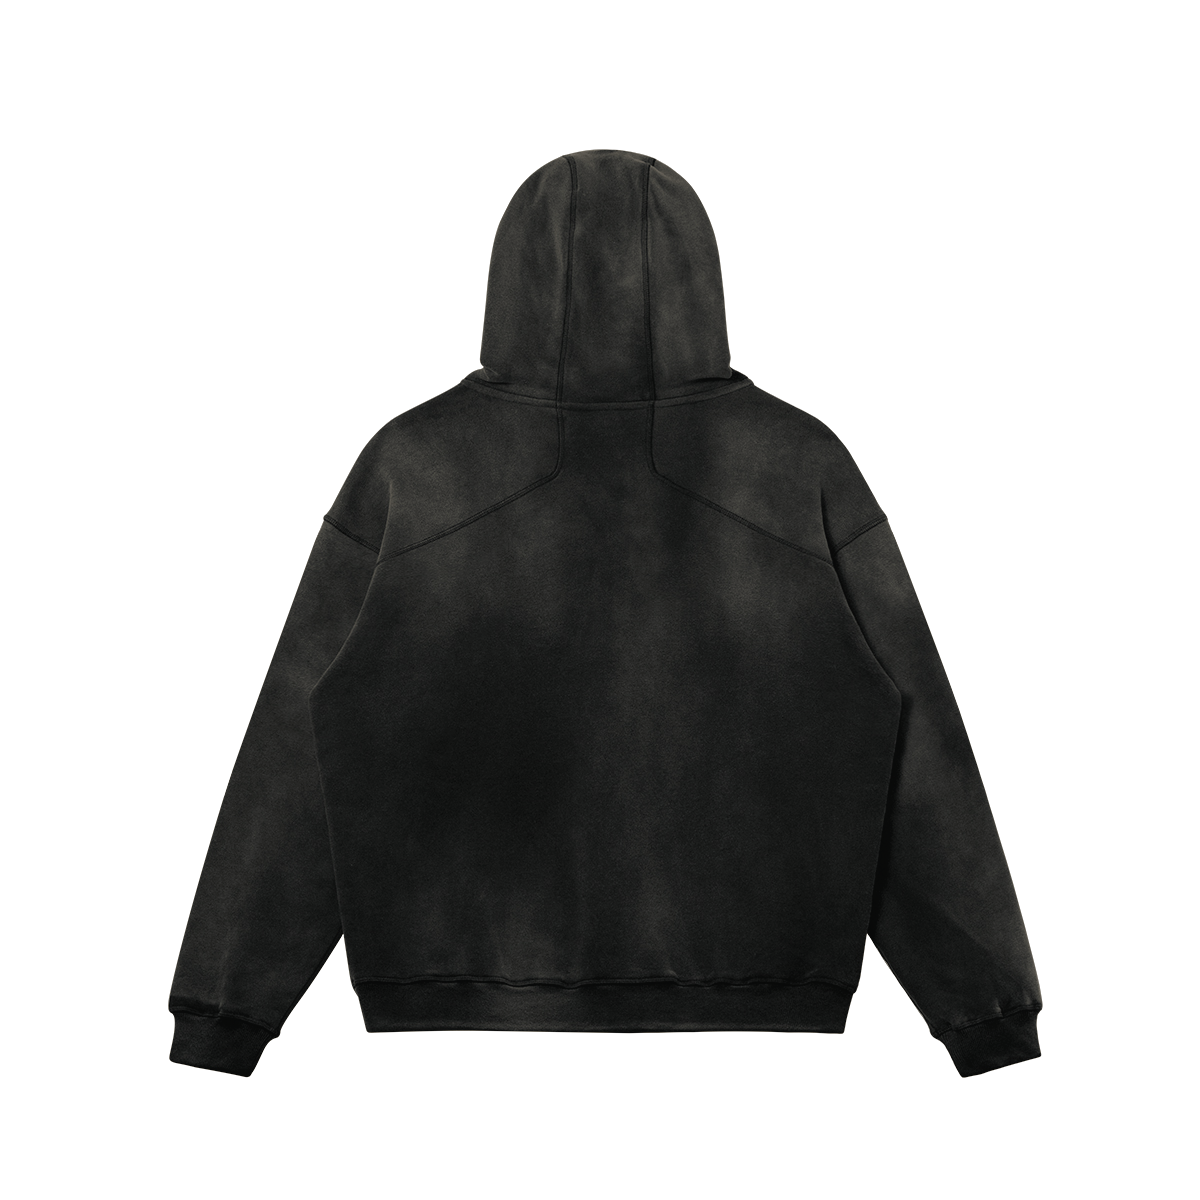 Interregnum hoodie funeral smoky black